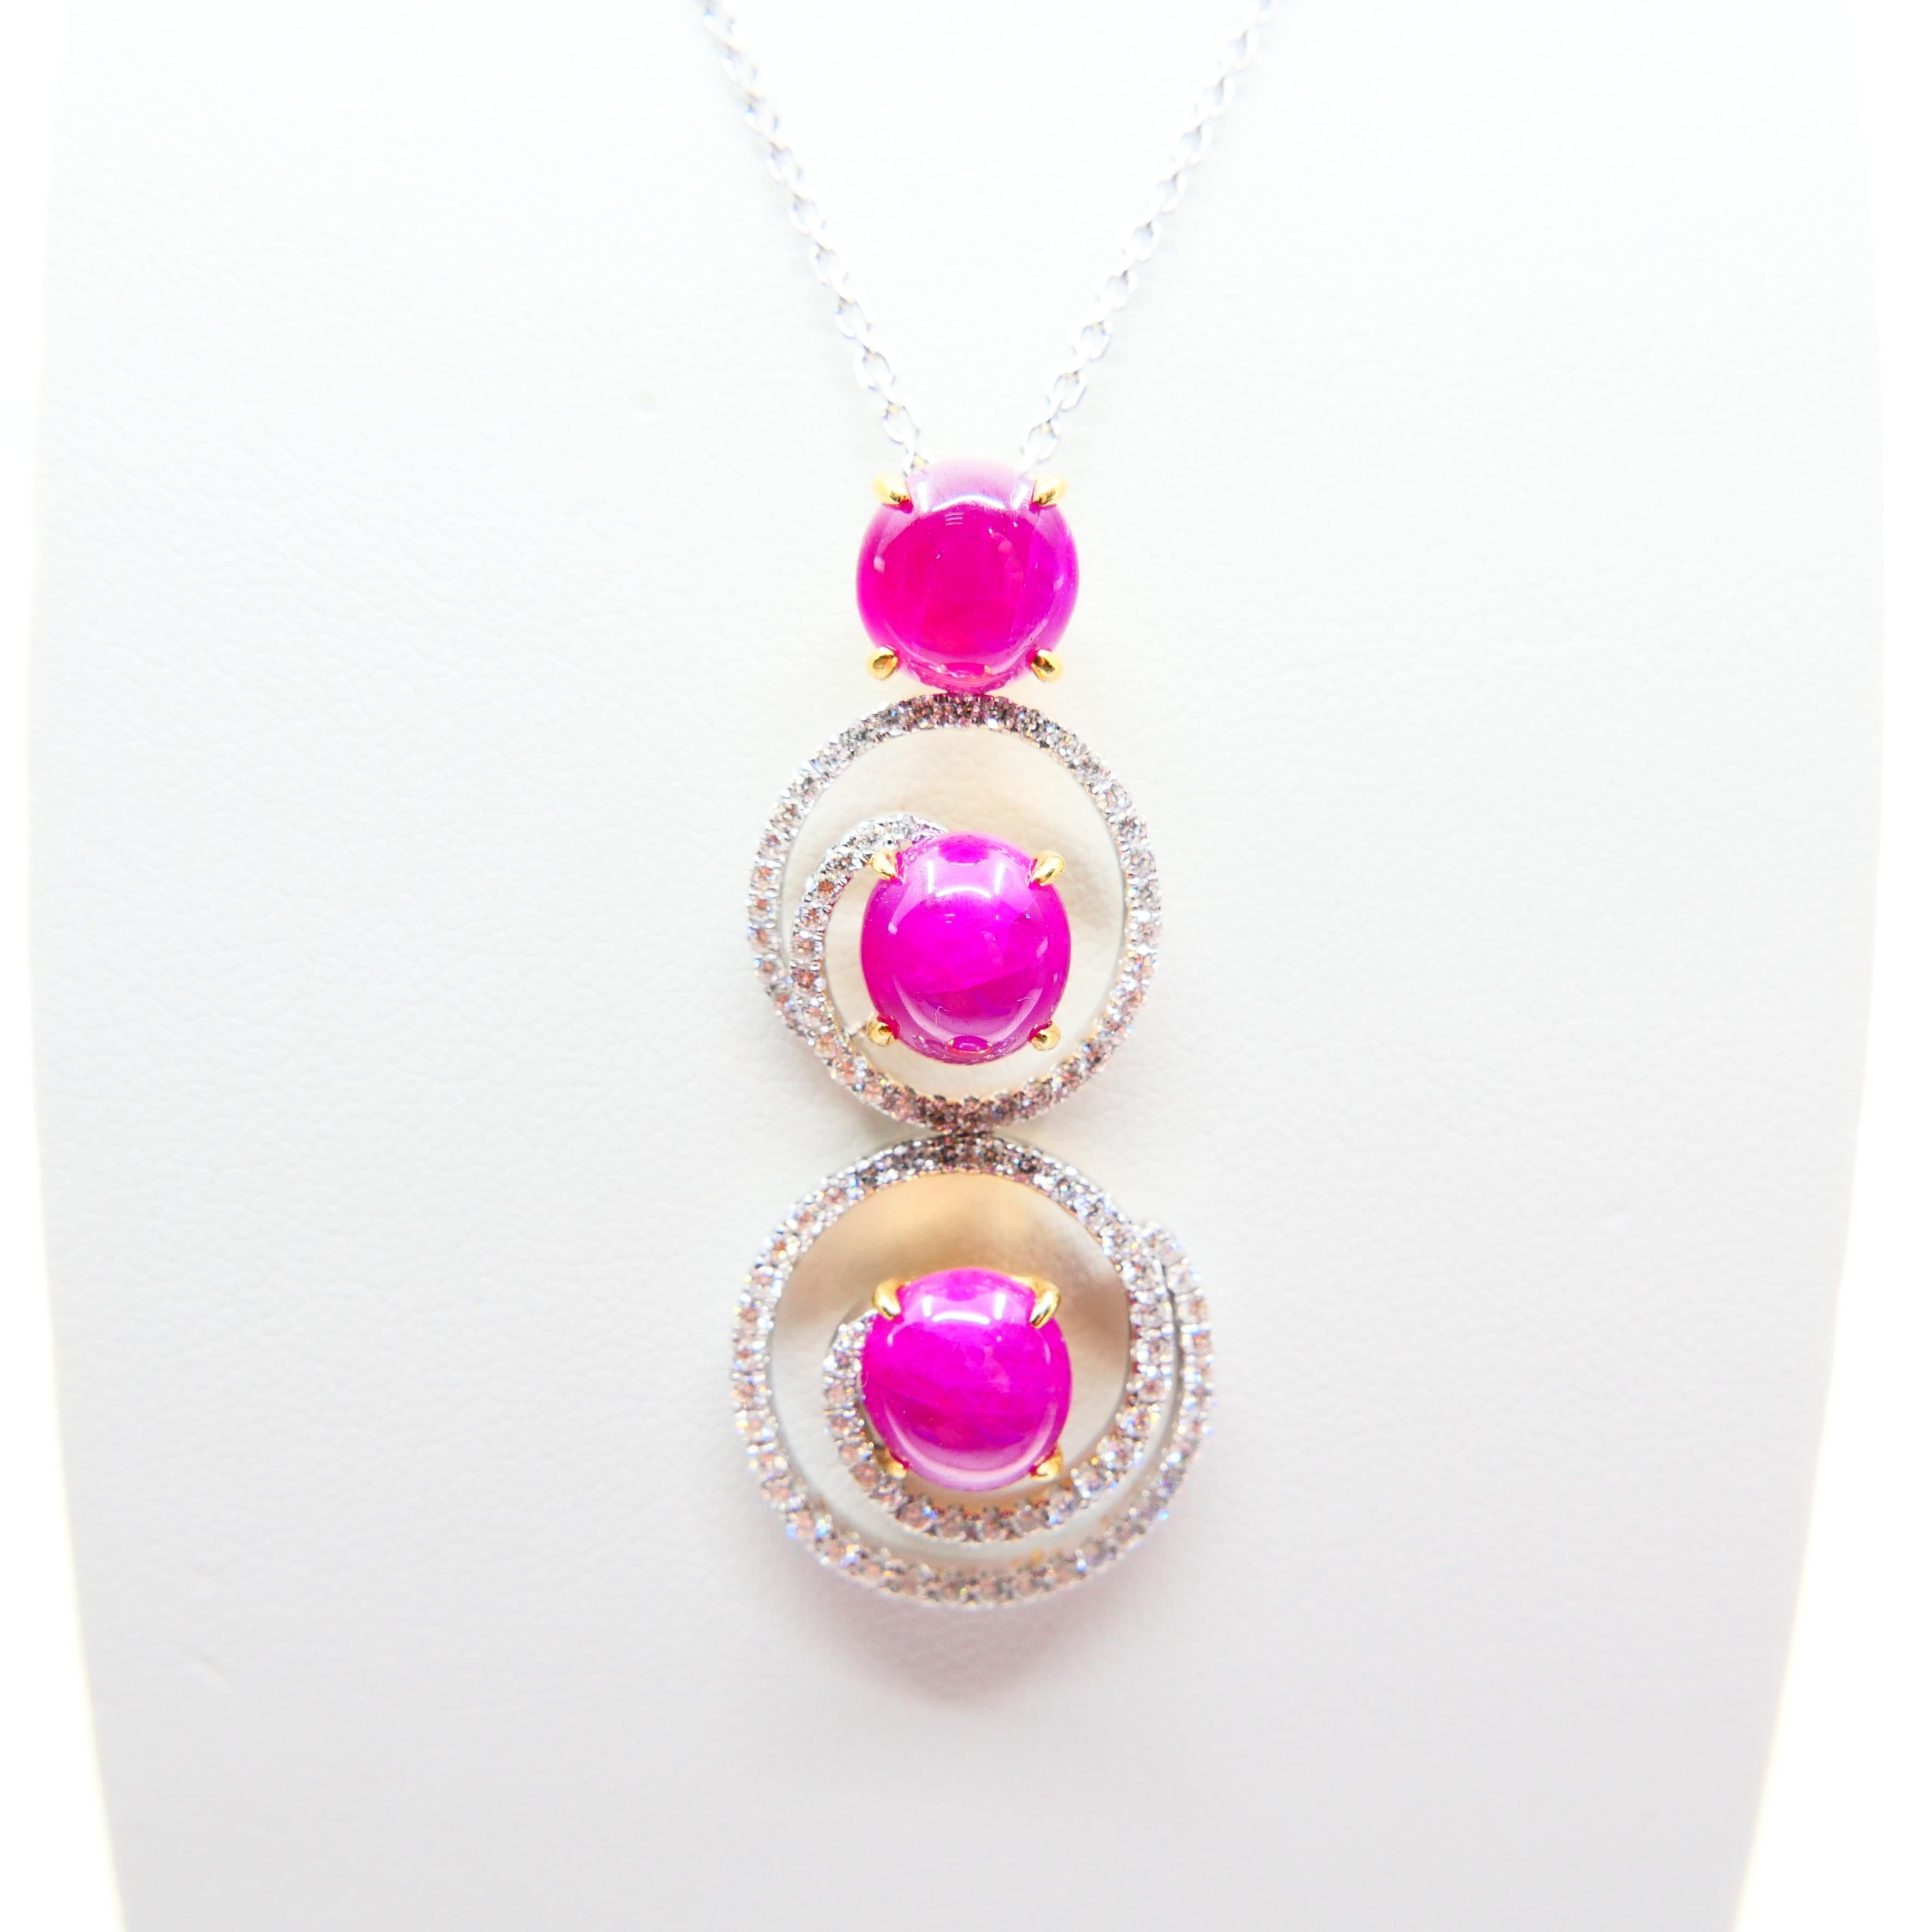 Burma Ruby 7.05 Carat and Diamond Pendant Drop Necklace, Elegant Design 6